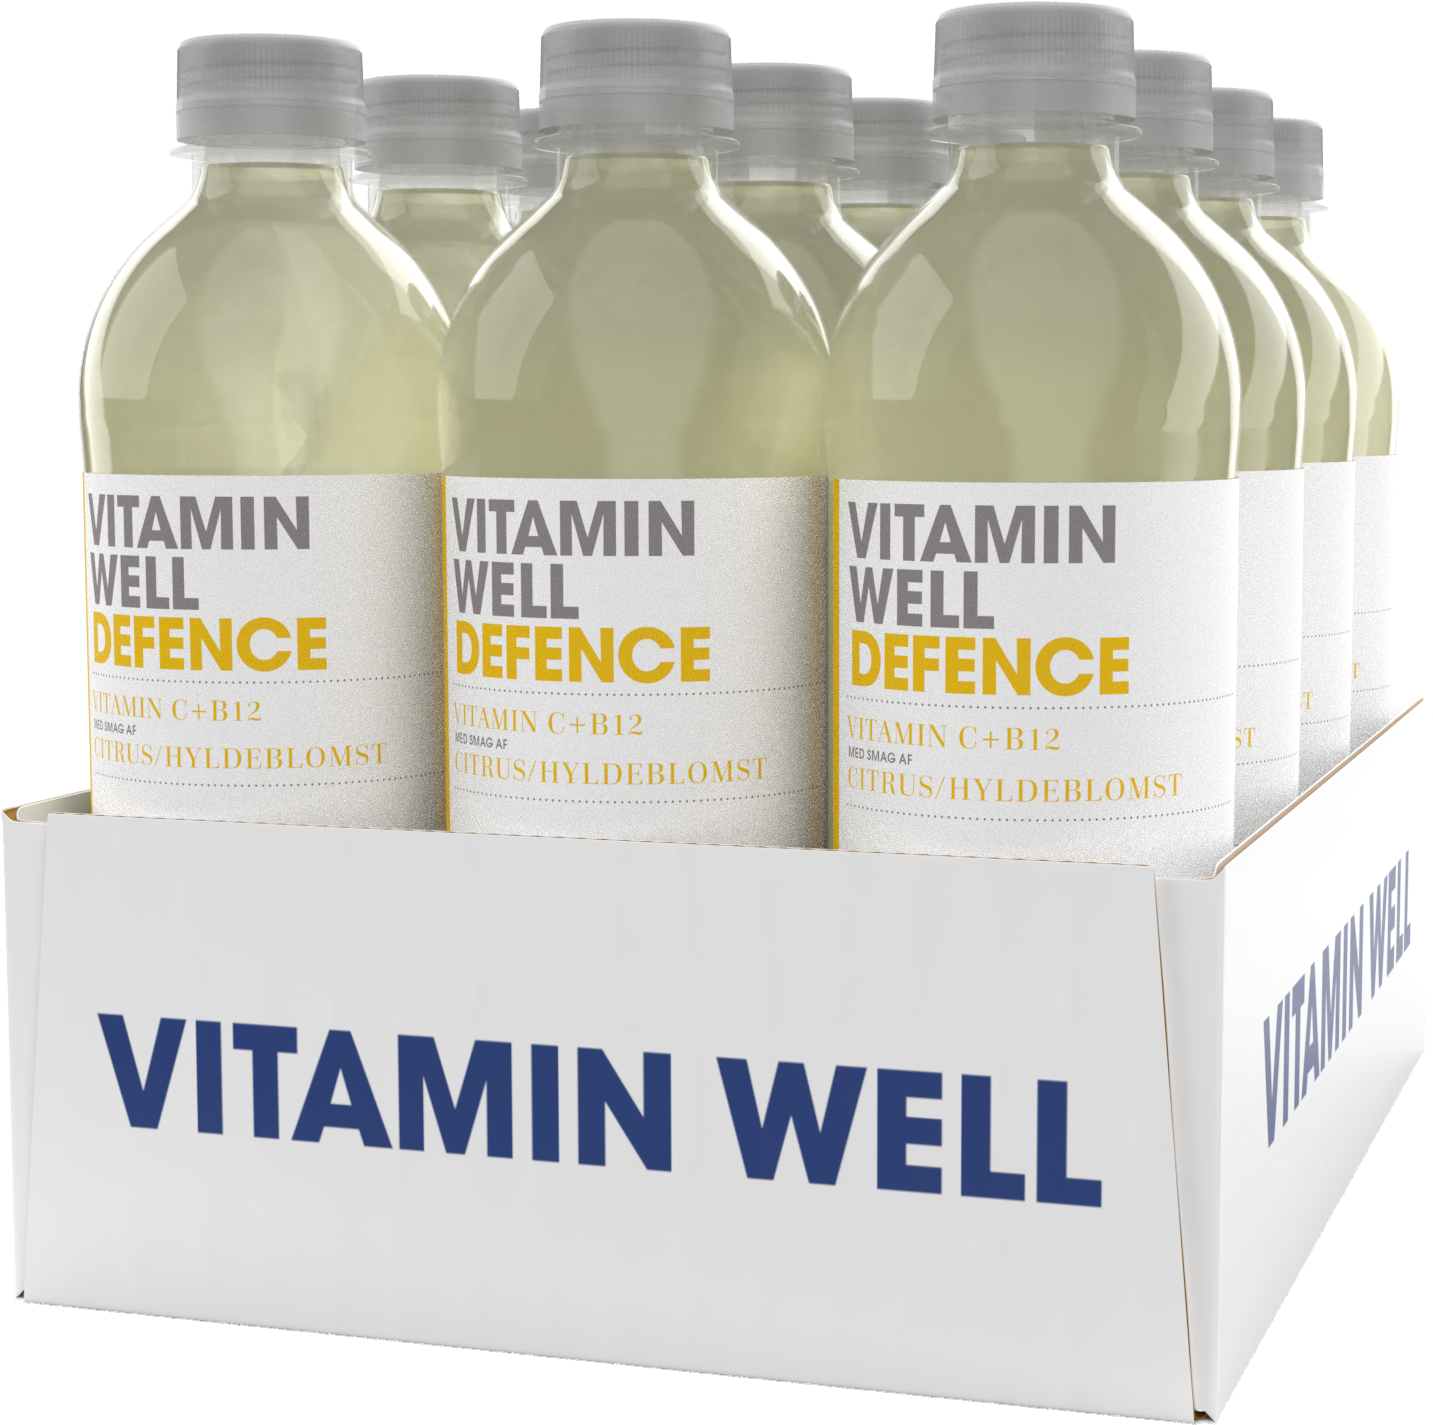 Brug Vitamin Well Defence (12x 500ml) til en forbedret oplevelse